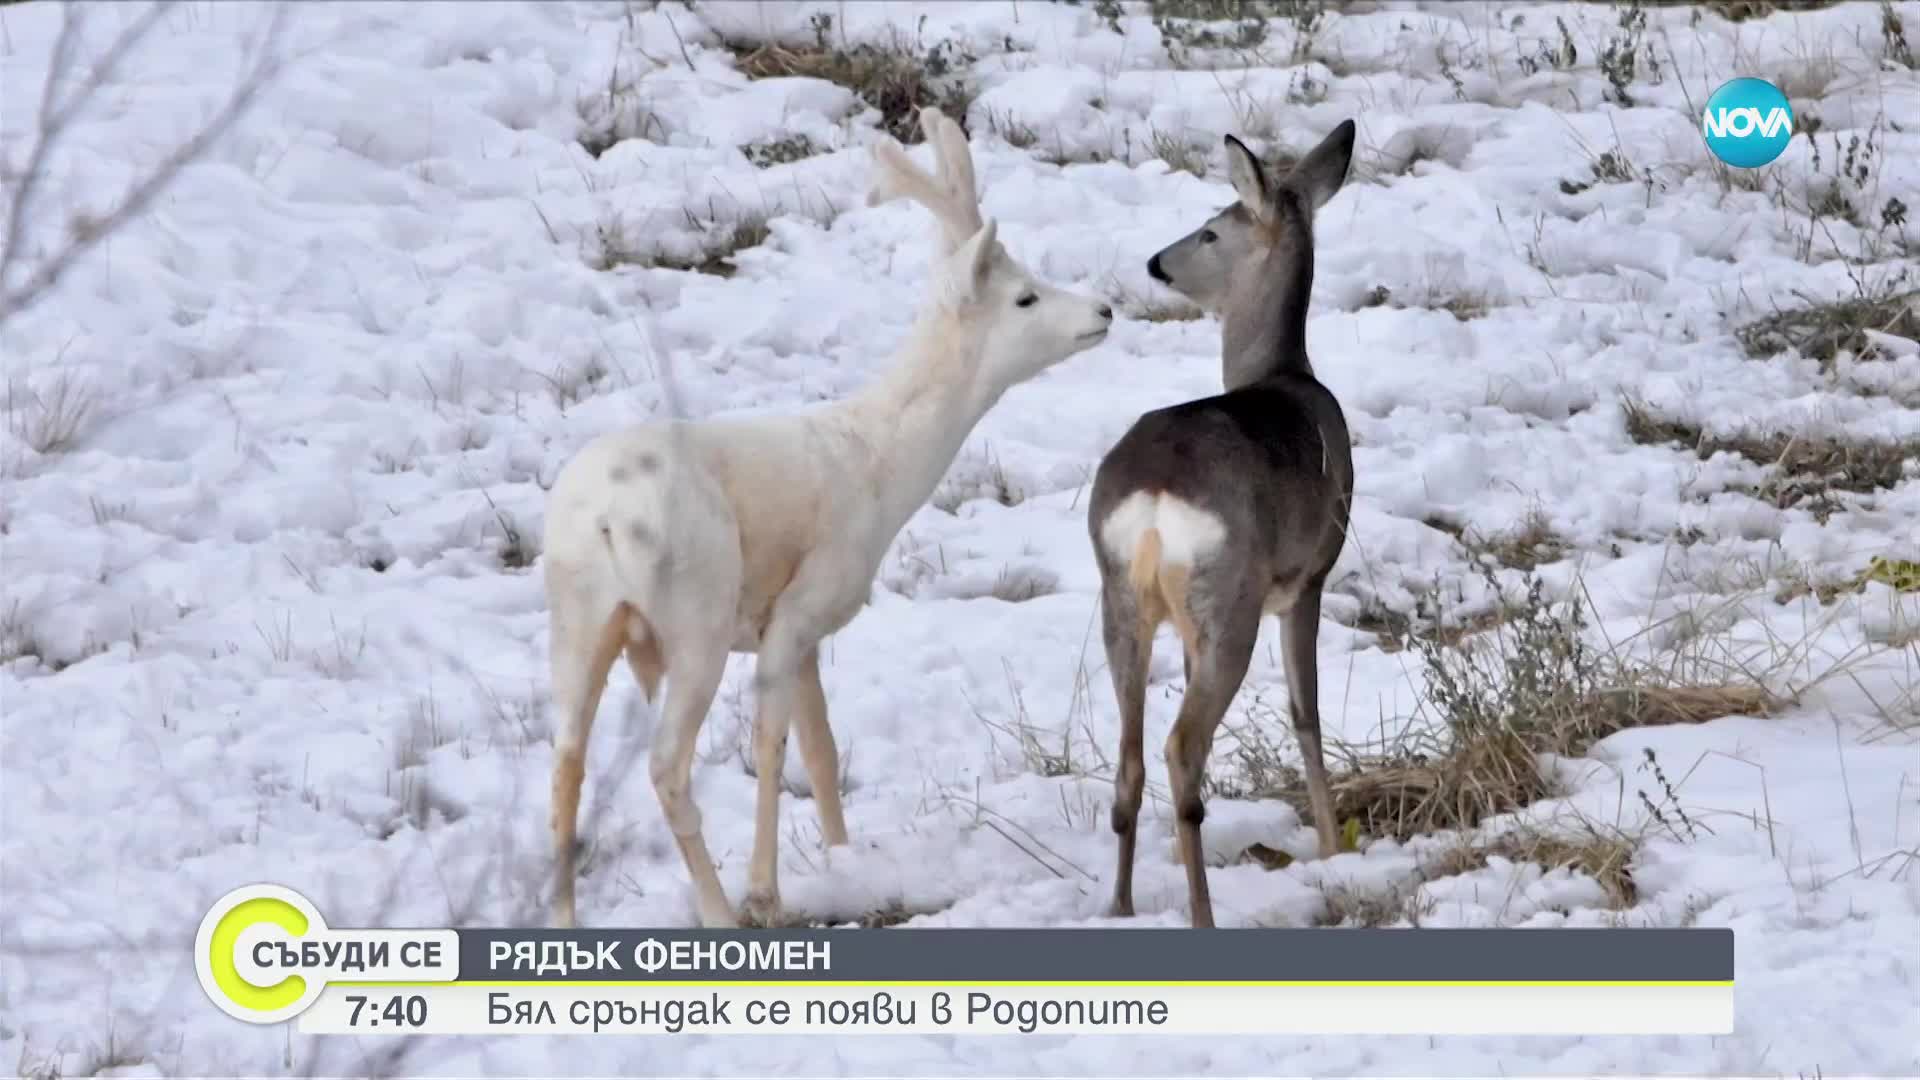 РЯДЪК ФЕНОМЕН: Бял сръндак се появи в Родопите